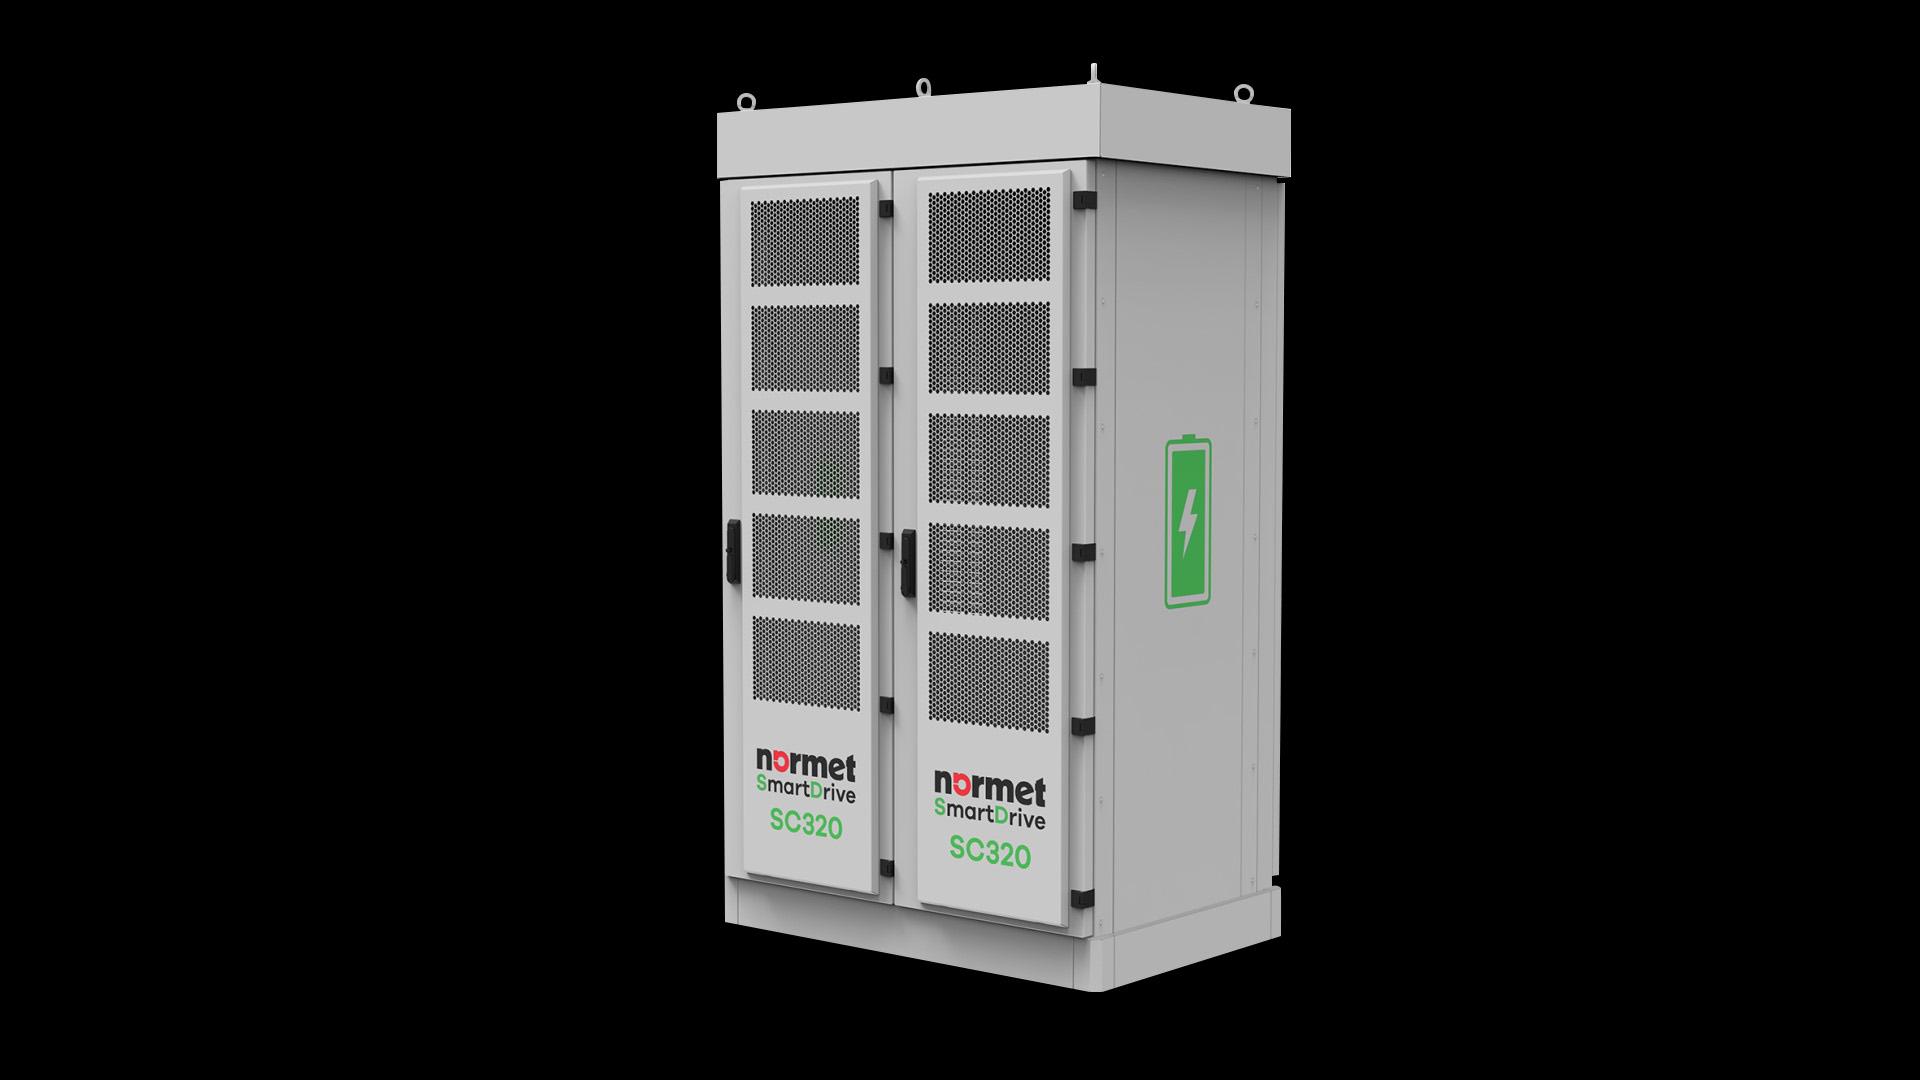 Normet SmartDrive SC320 Supply 1 Cabinet Bk